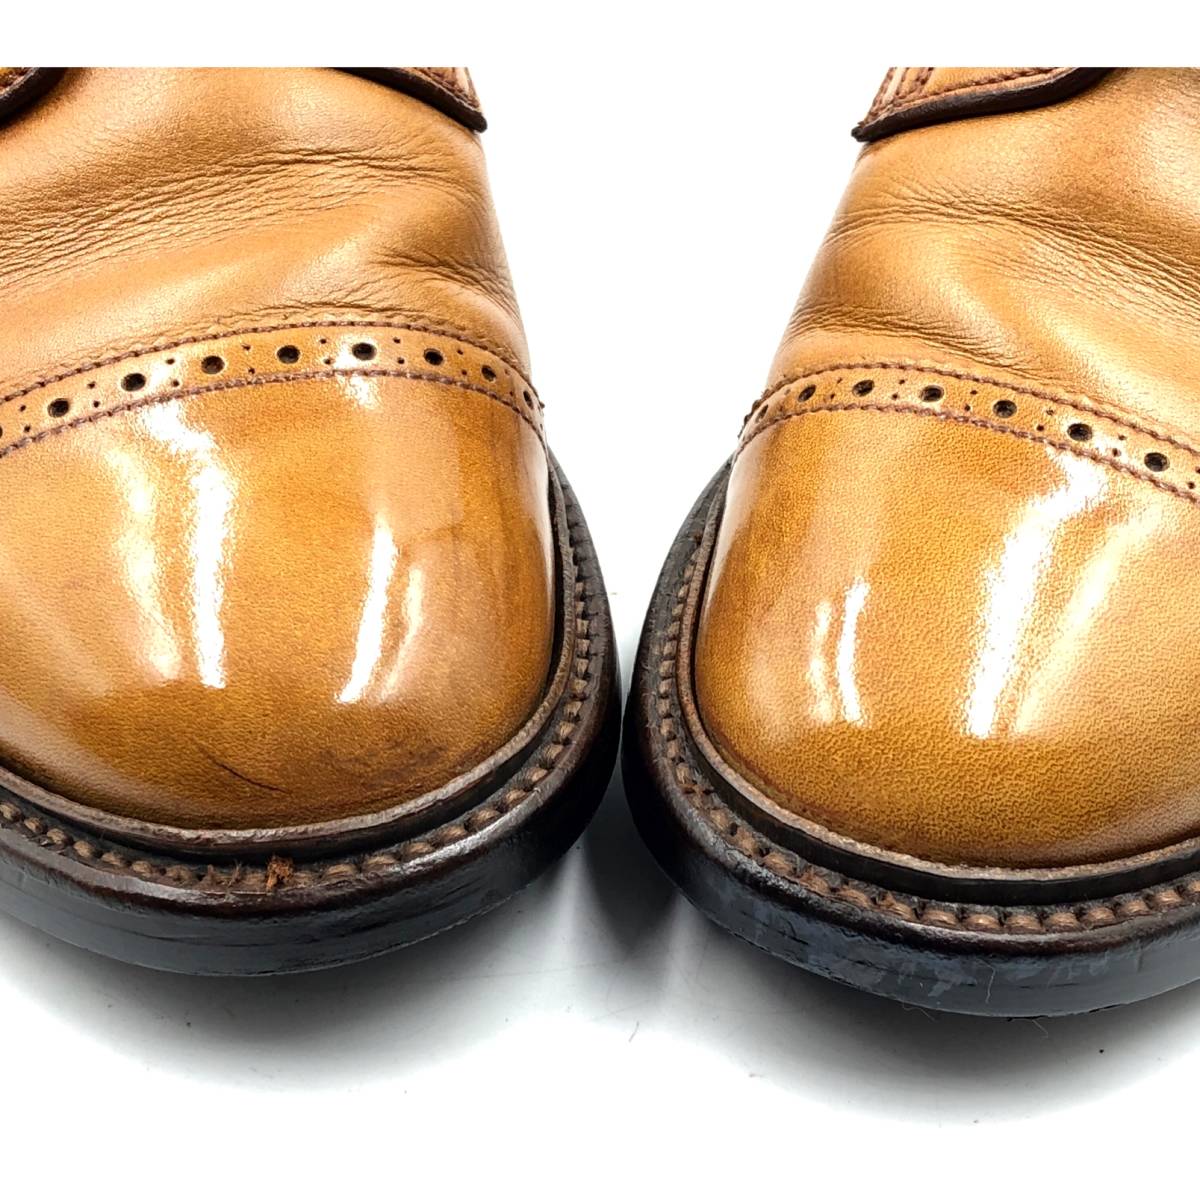 即決 REGAL Shoe & Co. リーガル 24.5cm 937S メンズ レザーシューズ ストレートチップ 外羽根 茶 ブラウン 革靴 皮靴  ビジネスシューズ